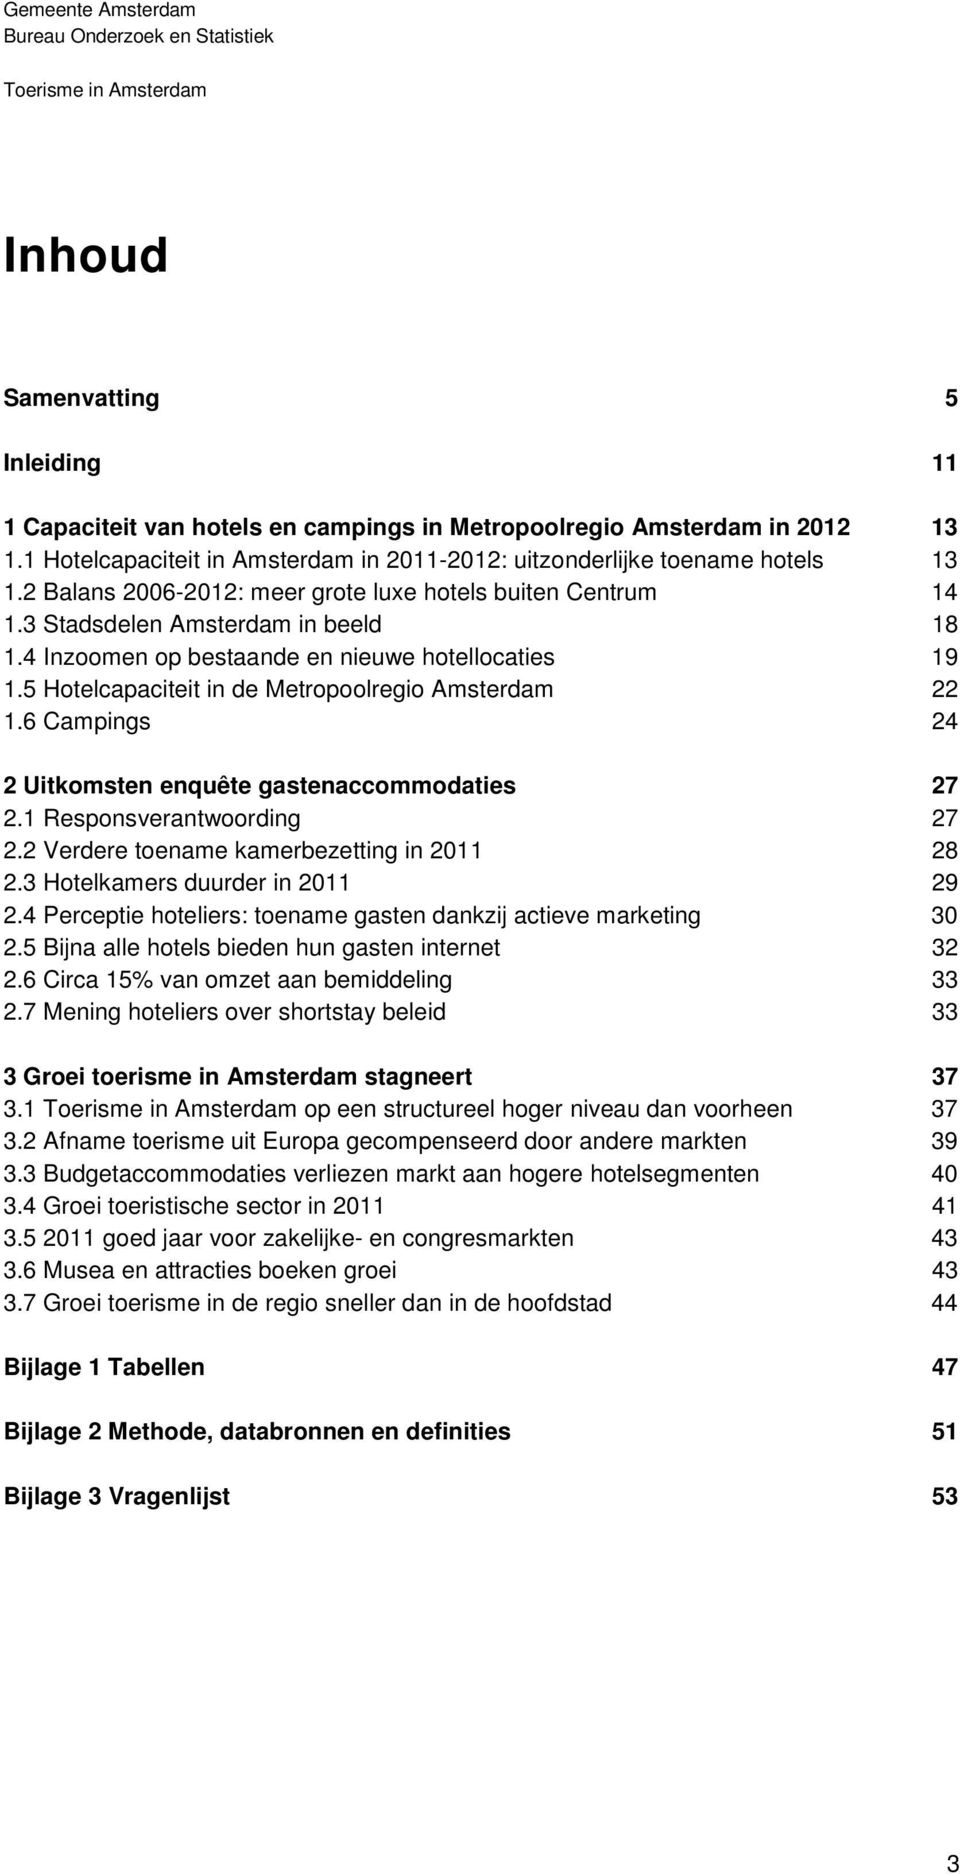 5 Hotelcapaciteit in de Metropoolregio Amsterdam 22 1.6 Campings 24 2 Uitkomsten enquête gastenaccommodaties 27 2.1 Responsverantwoording 27 2.2 Verdere toename kamerbezetting in 2011 28 2.